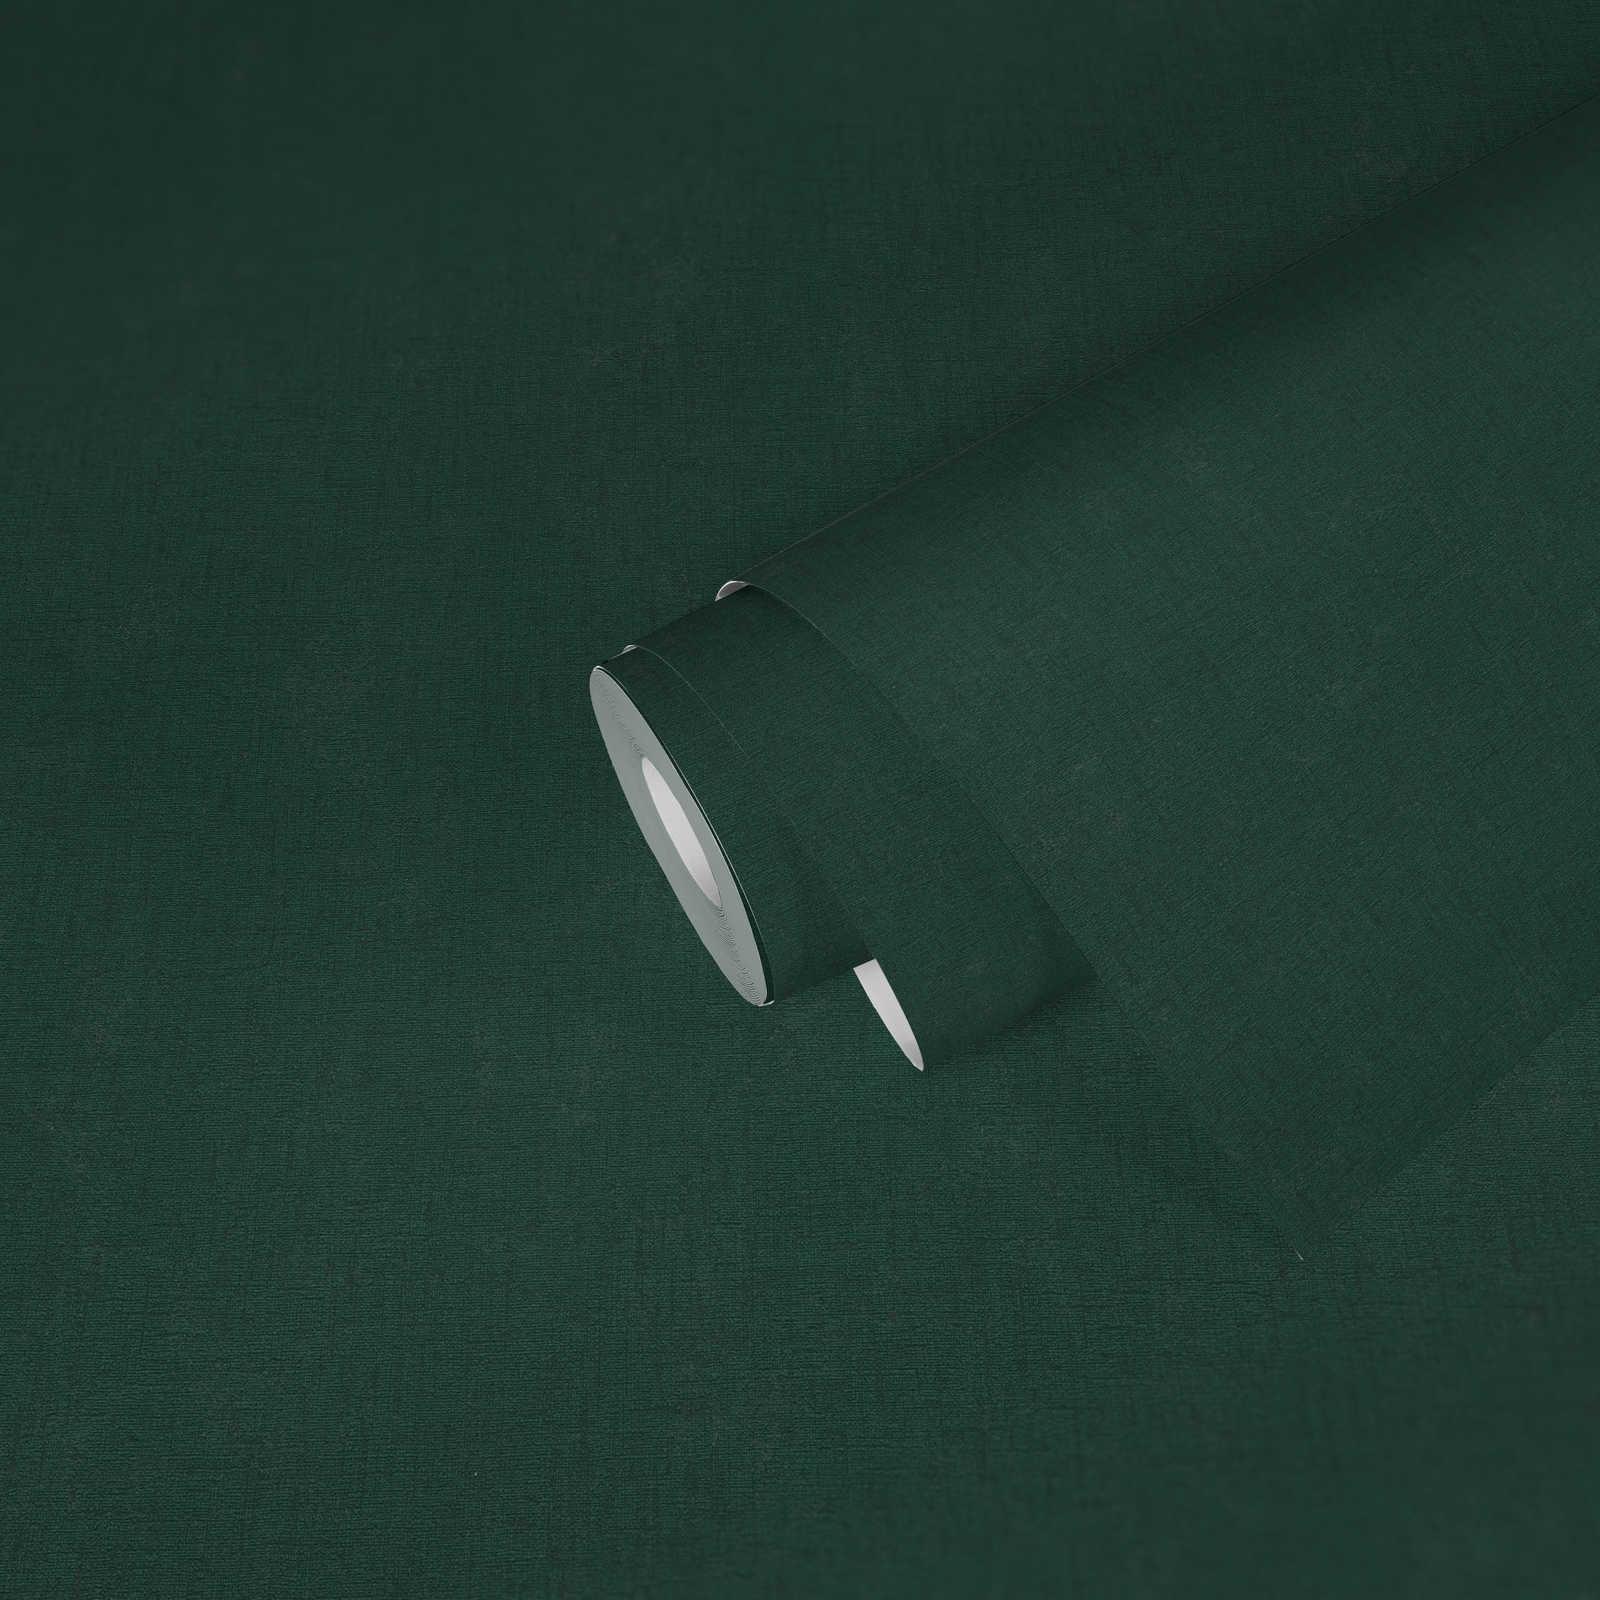             Carta da parati monocolore in tessuto non tessuto a trama leggera - verde, verde scuro
        